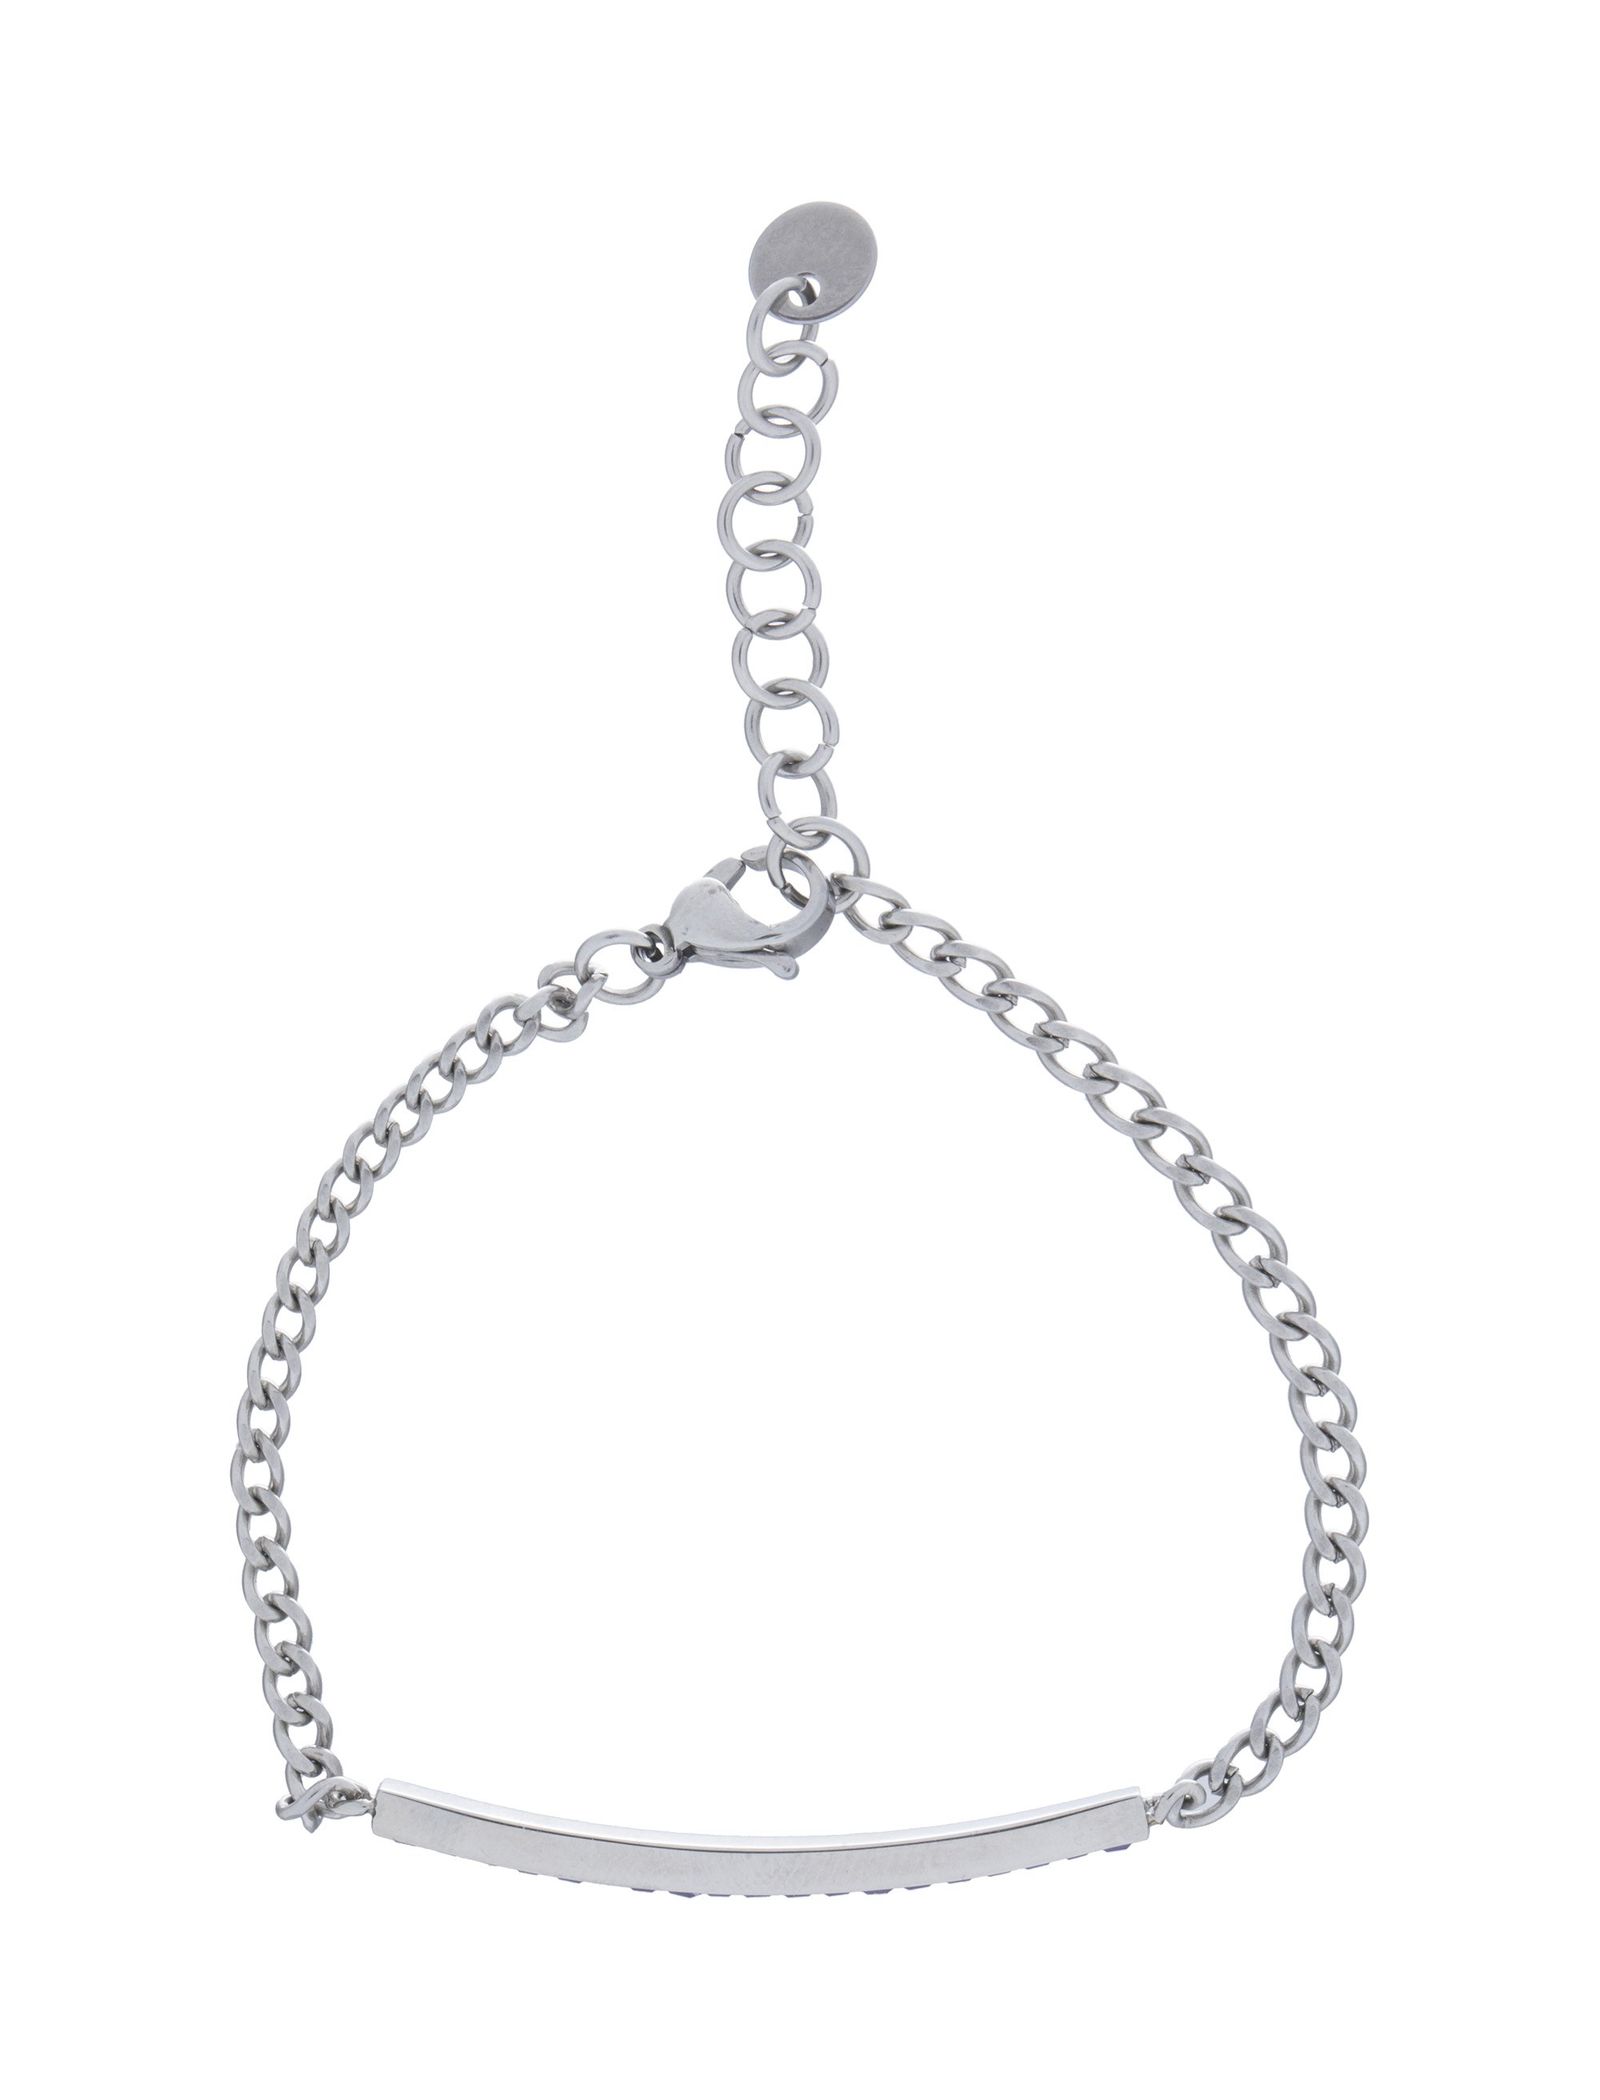 دستبند استیل زنجیری زنانه - برازوی - نقره اي - 3